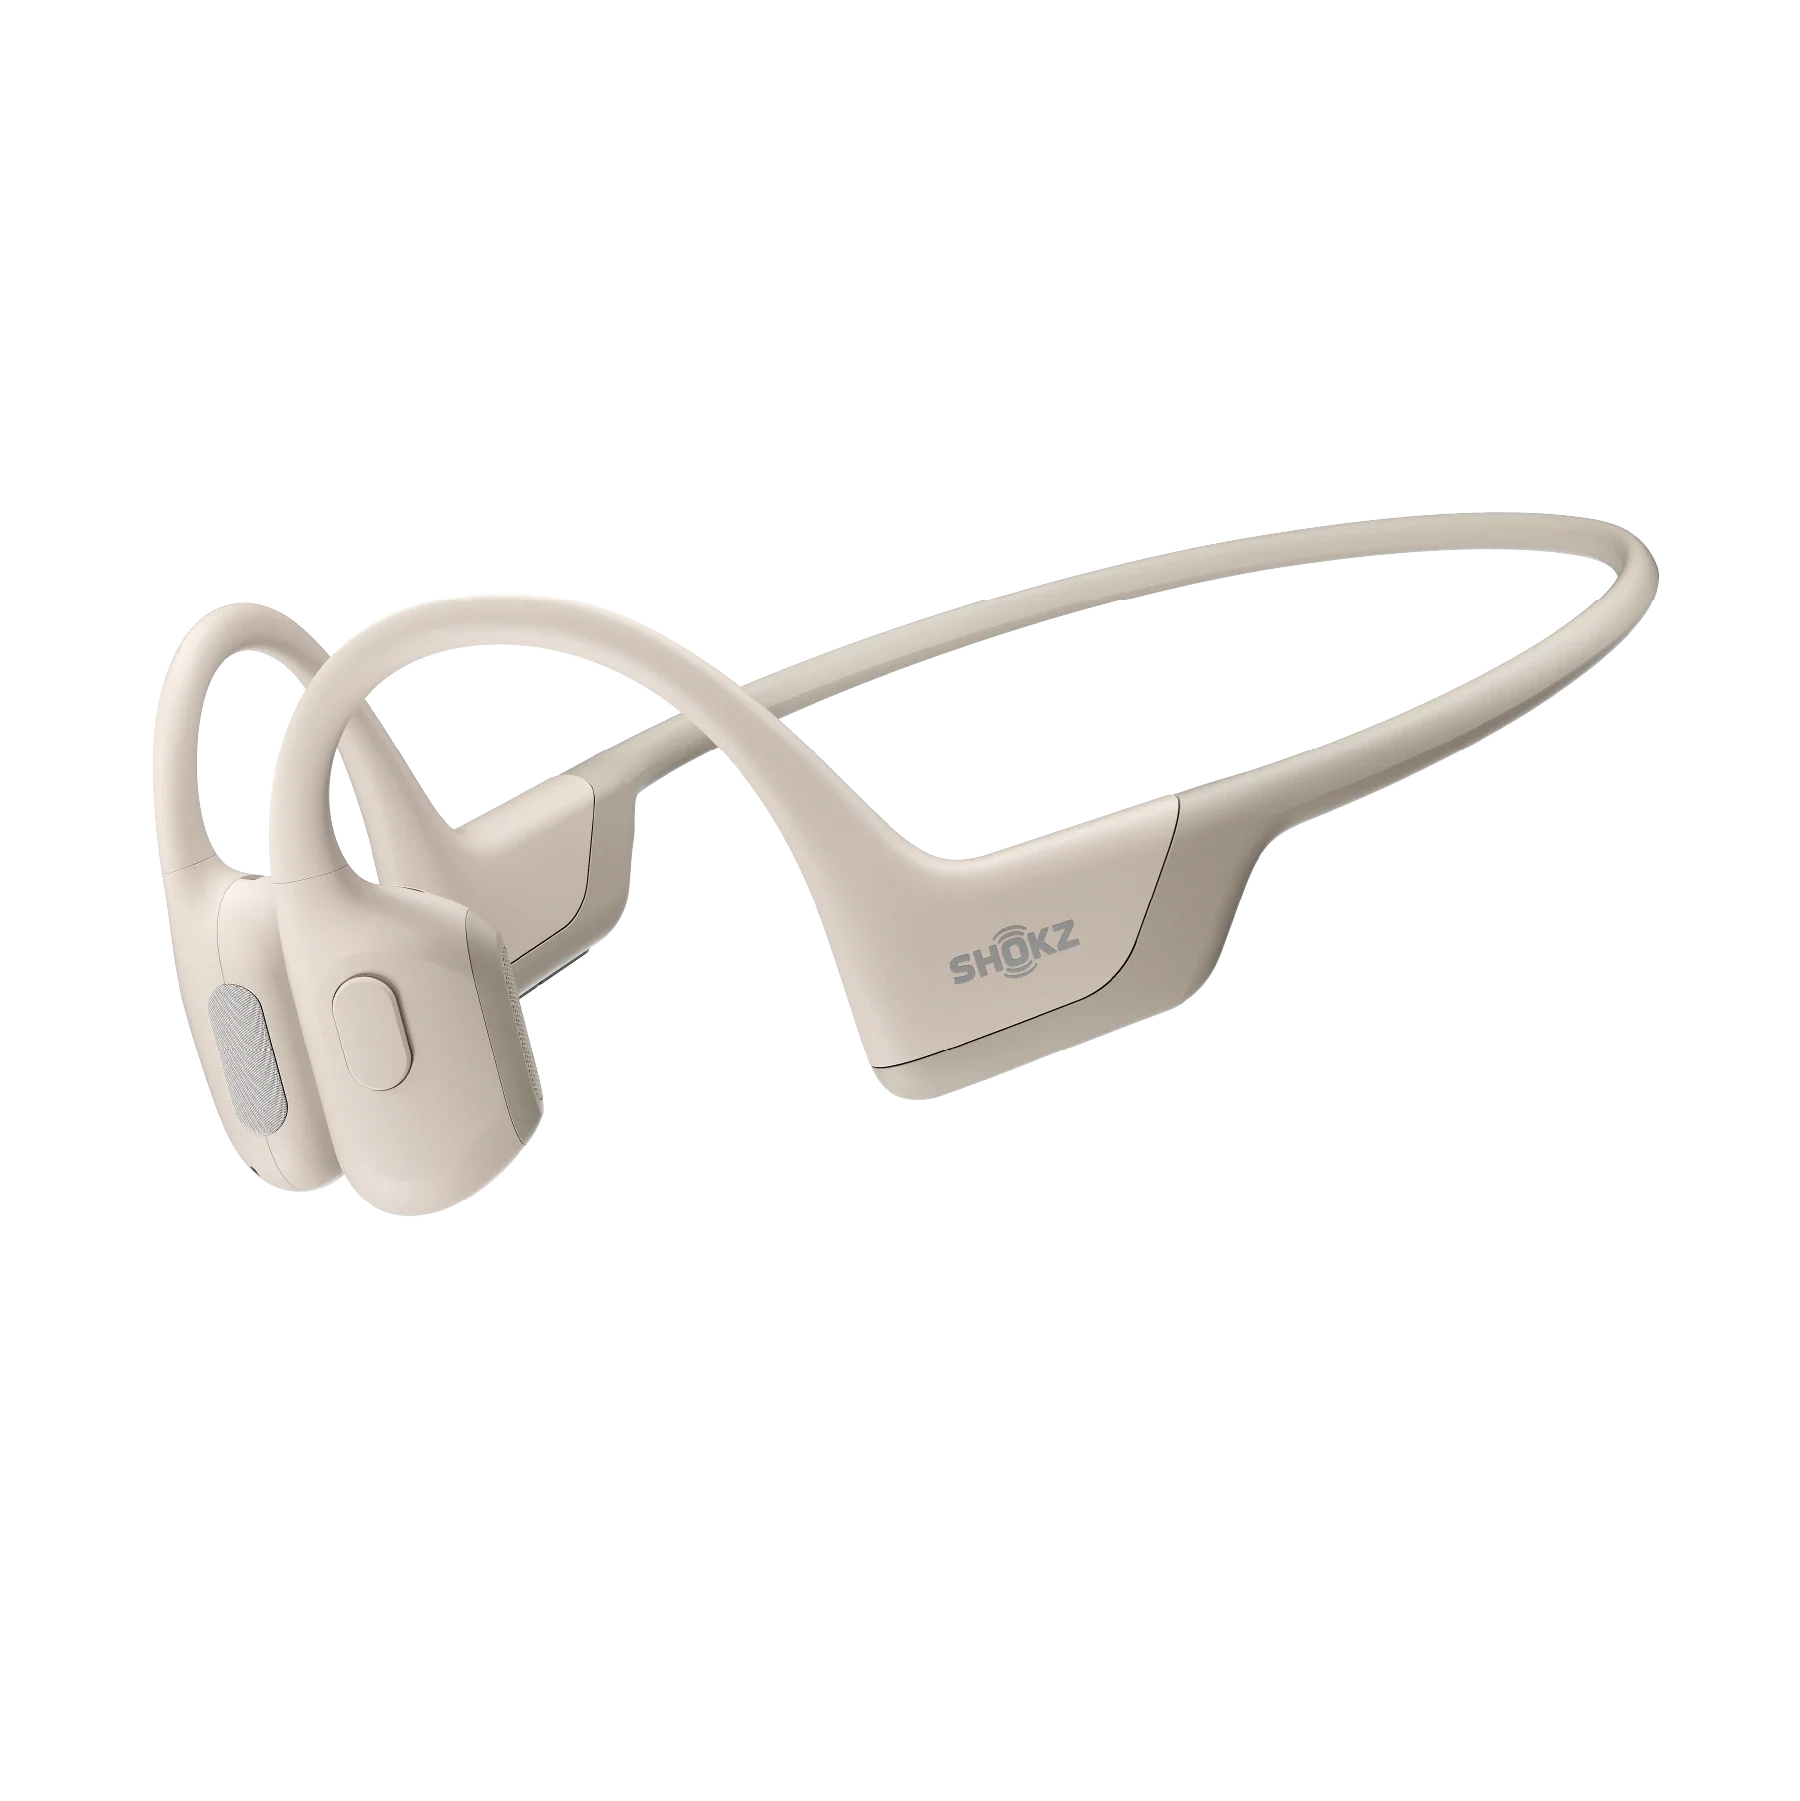 OpenRun Pro Open-Ear Bone Conduction Wireless Headphones 